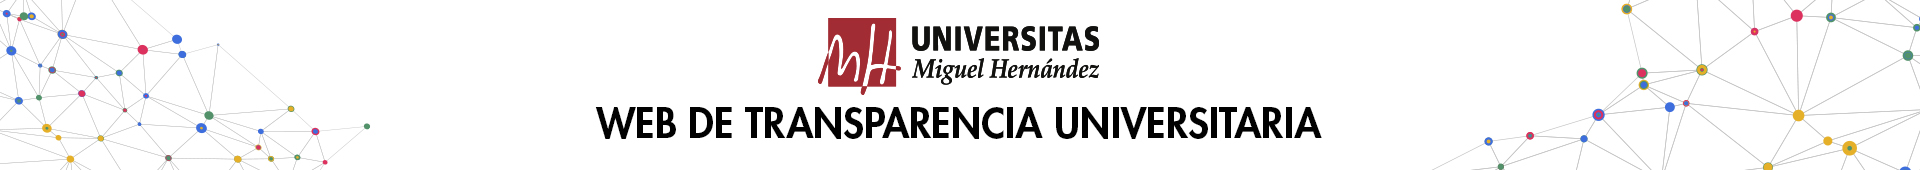 Universidad Miguel Hernández Web de Transparencia Universitaria